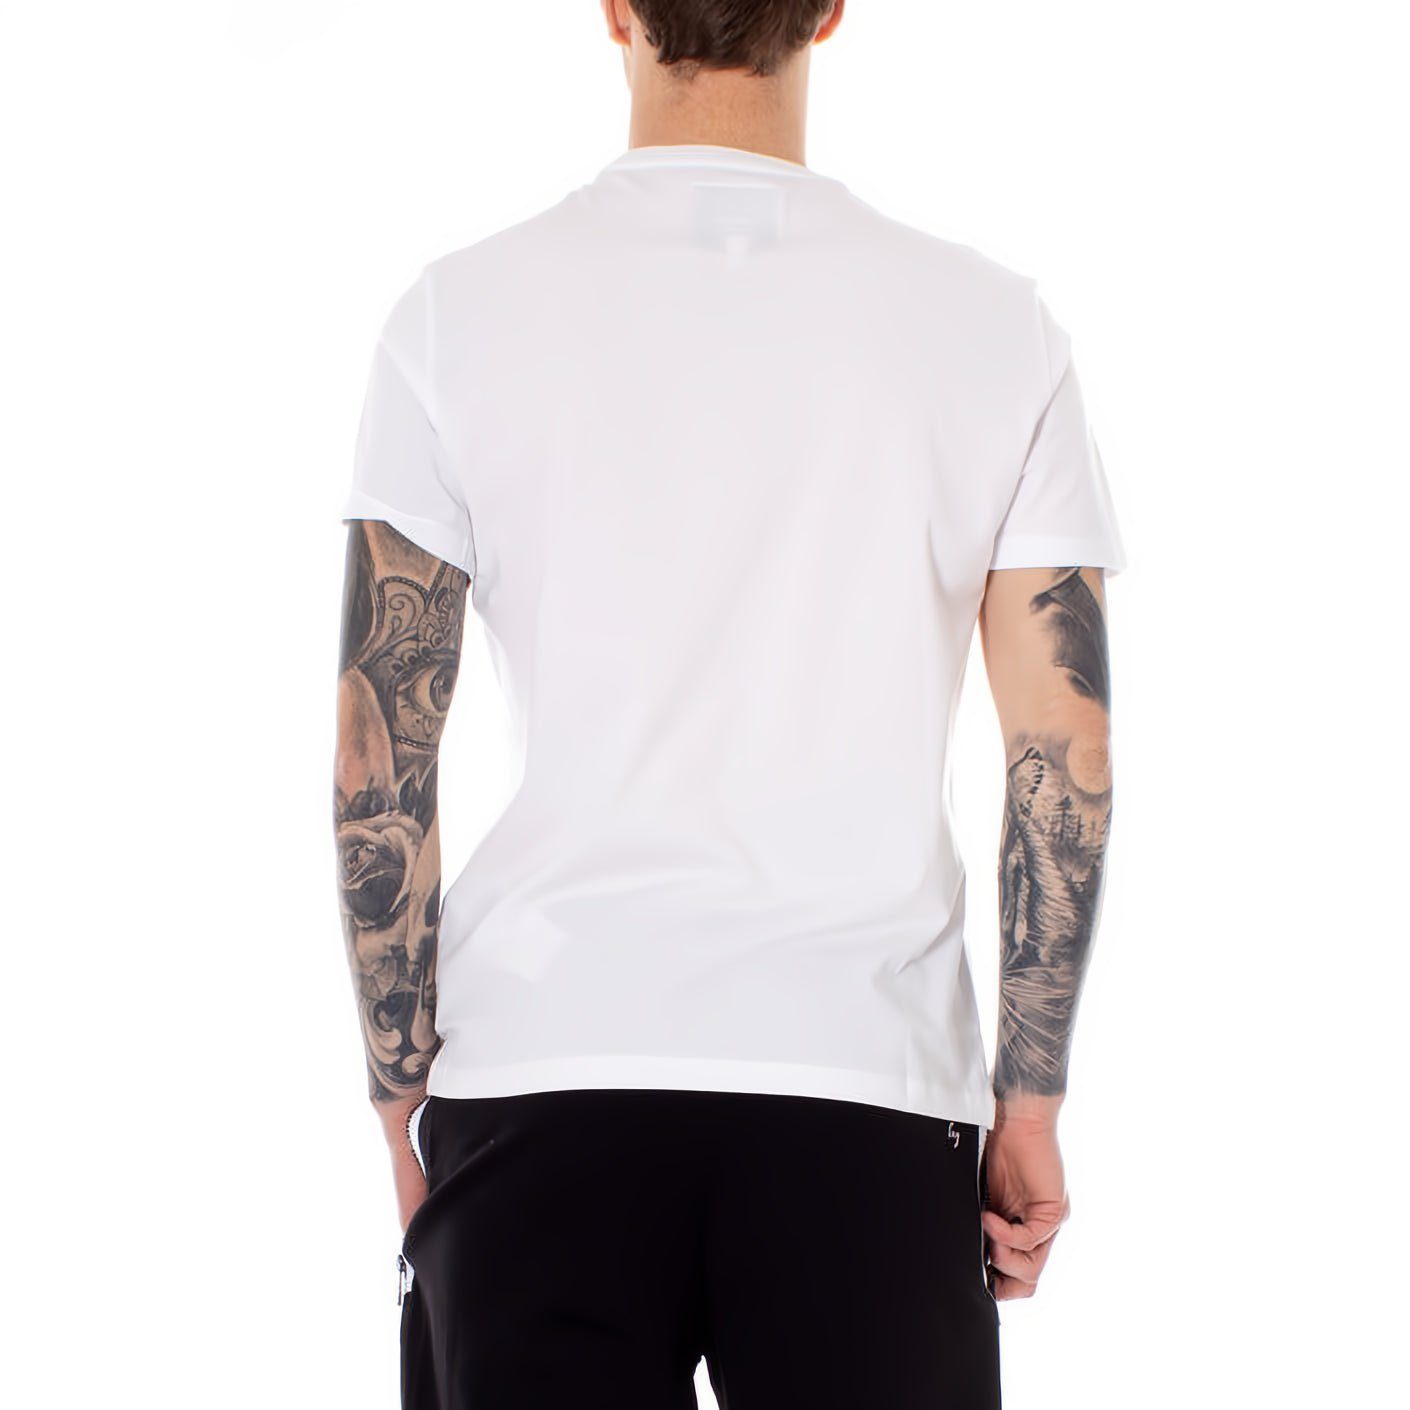 ARMANI EXCHANGE für Ihre ein Must-Have Rundhals, kurzarm, Kleidungskollektion! T-Shirt